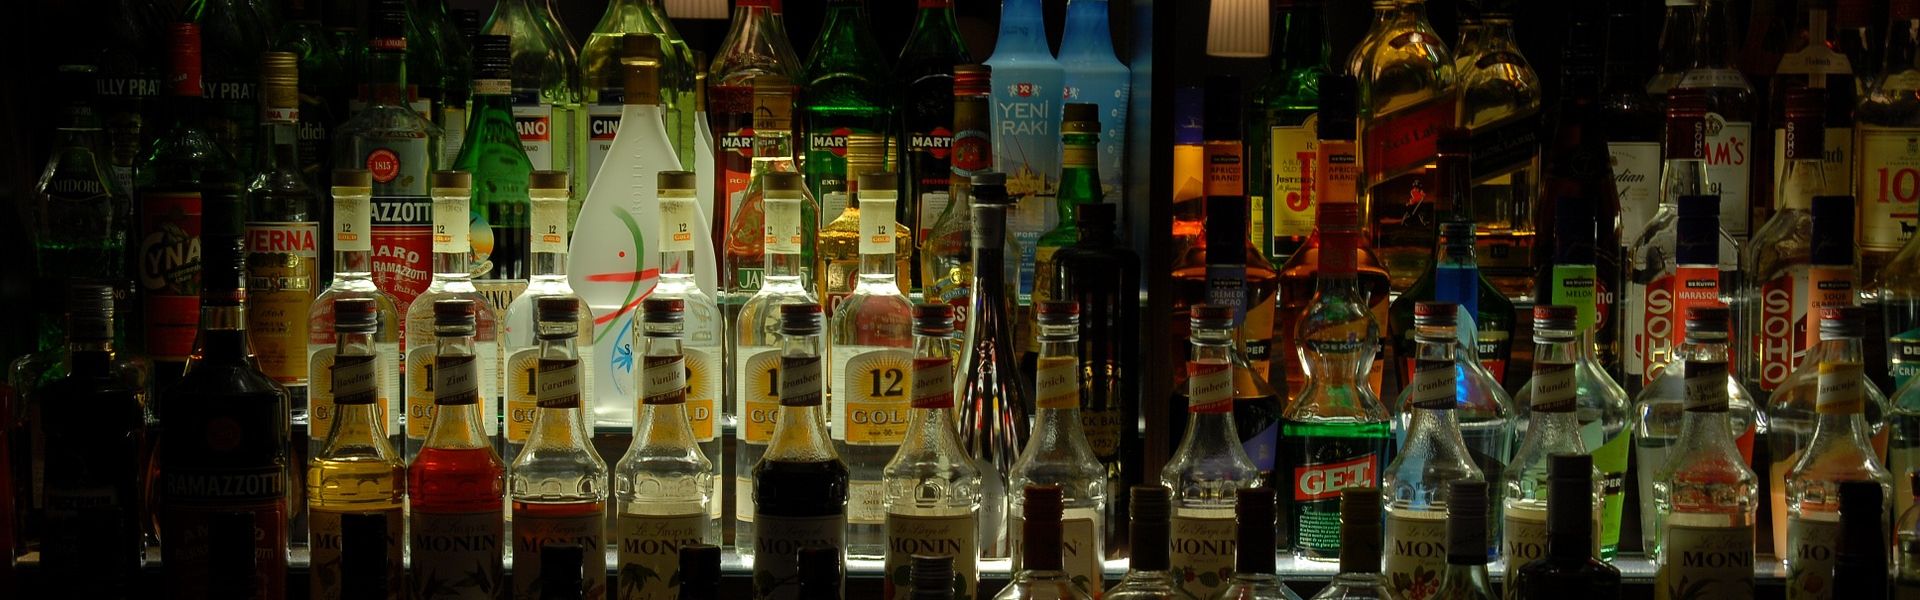 Bar met flessen alcohol bij het versje 'Zeker en vast' van Paul de Vries. Foto 857380 Josetxu op Pixabay